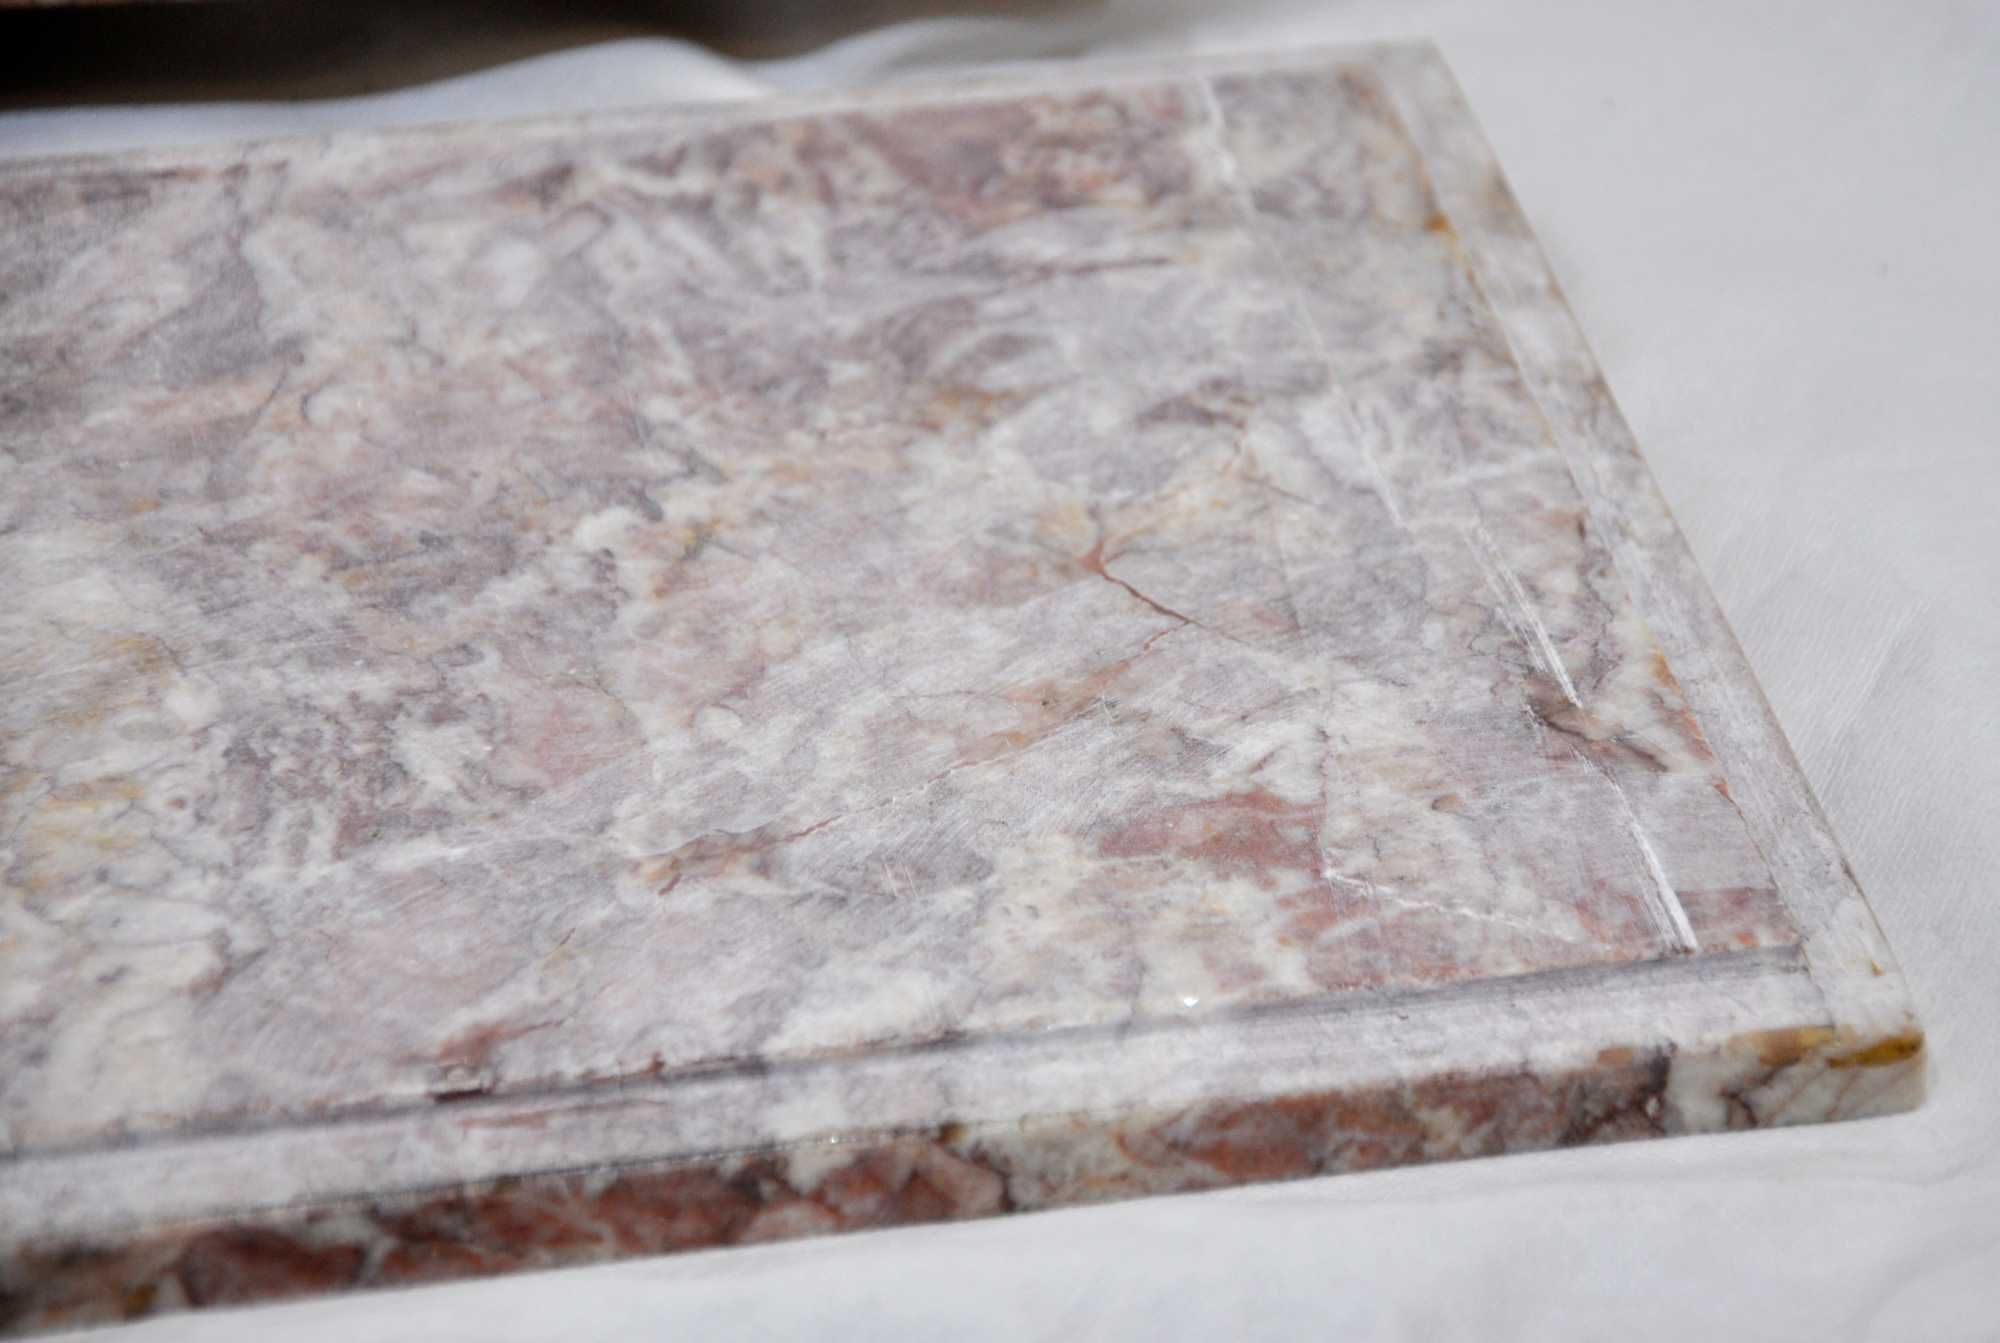 Blat Marmurowy Prostokątny Wycięty z Podcięciem 38x22cm Grubość 1,5cm